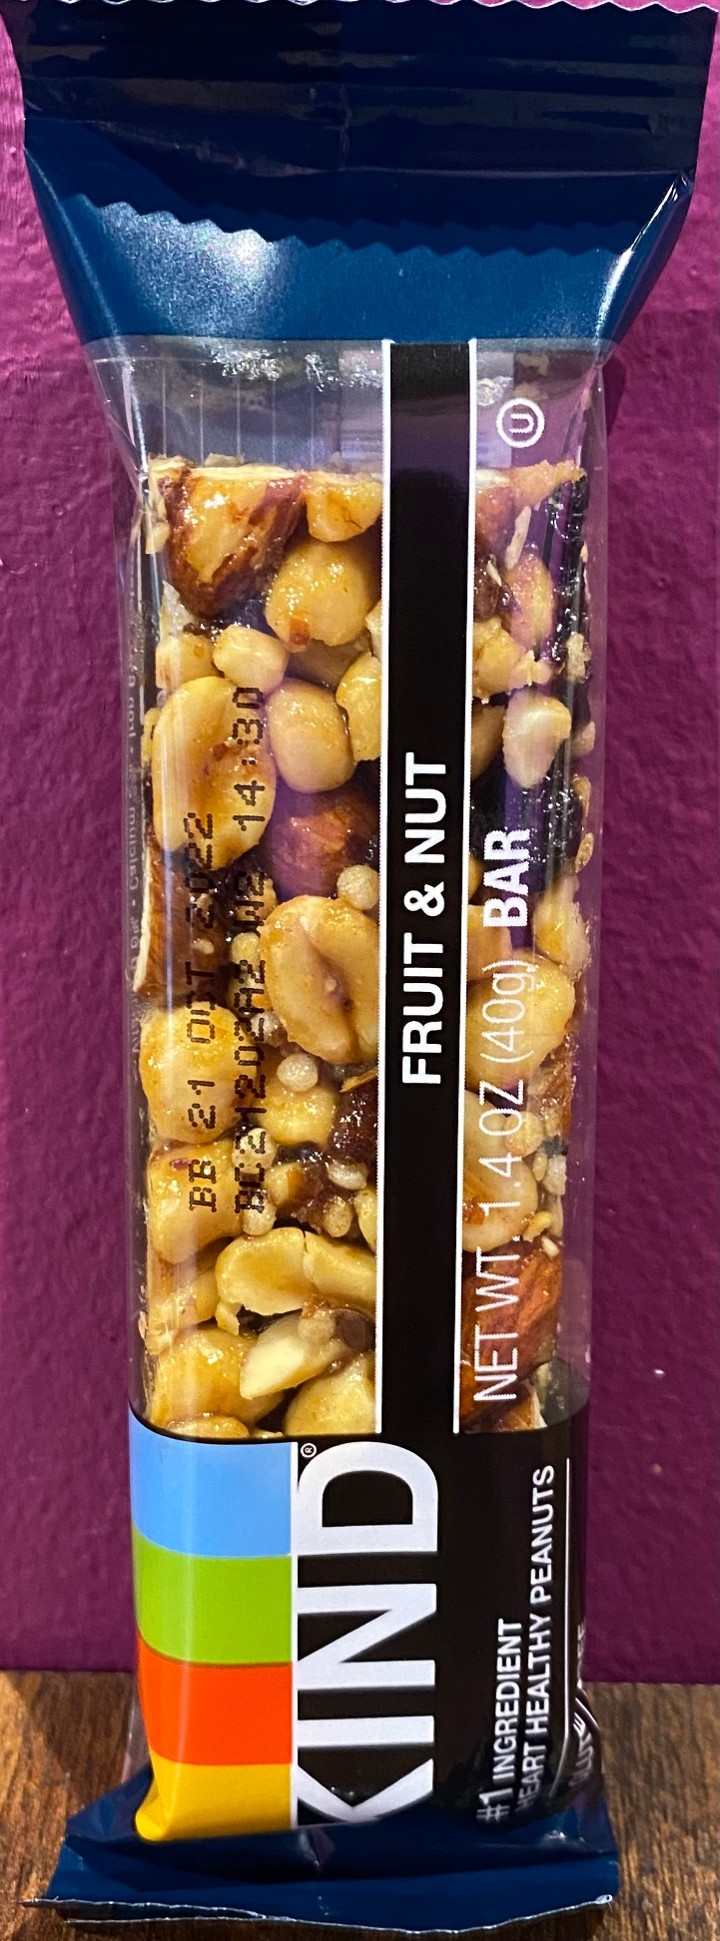 Kind Bar - Fruit & Nut